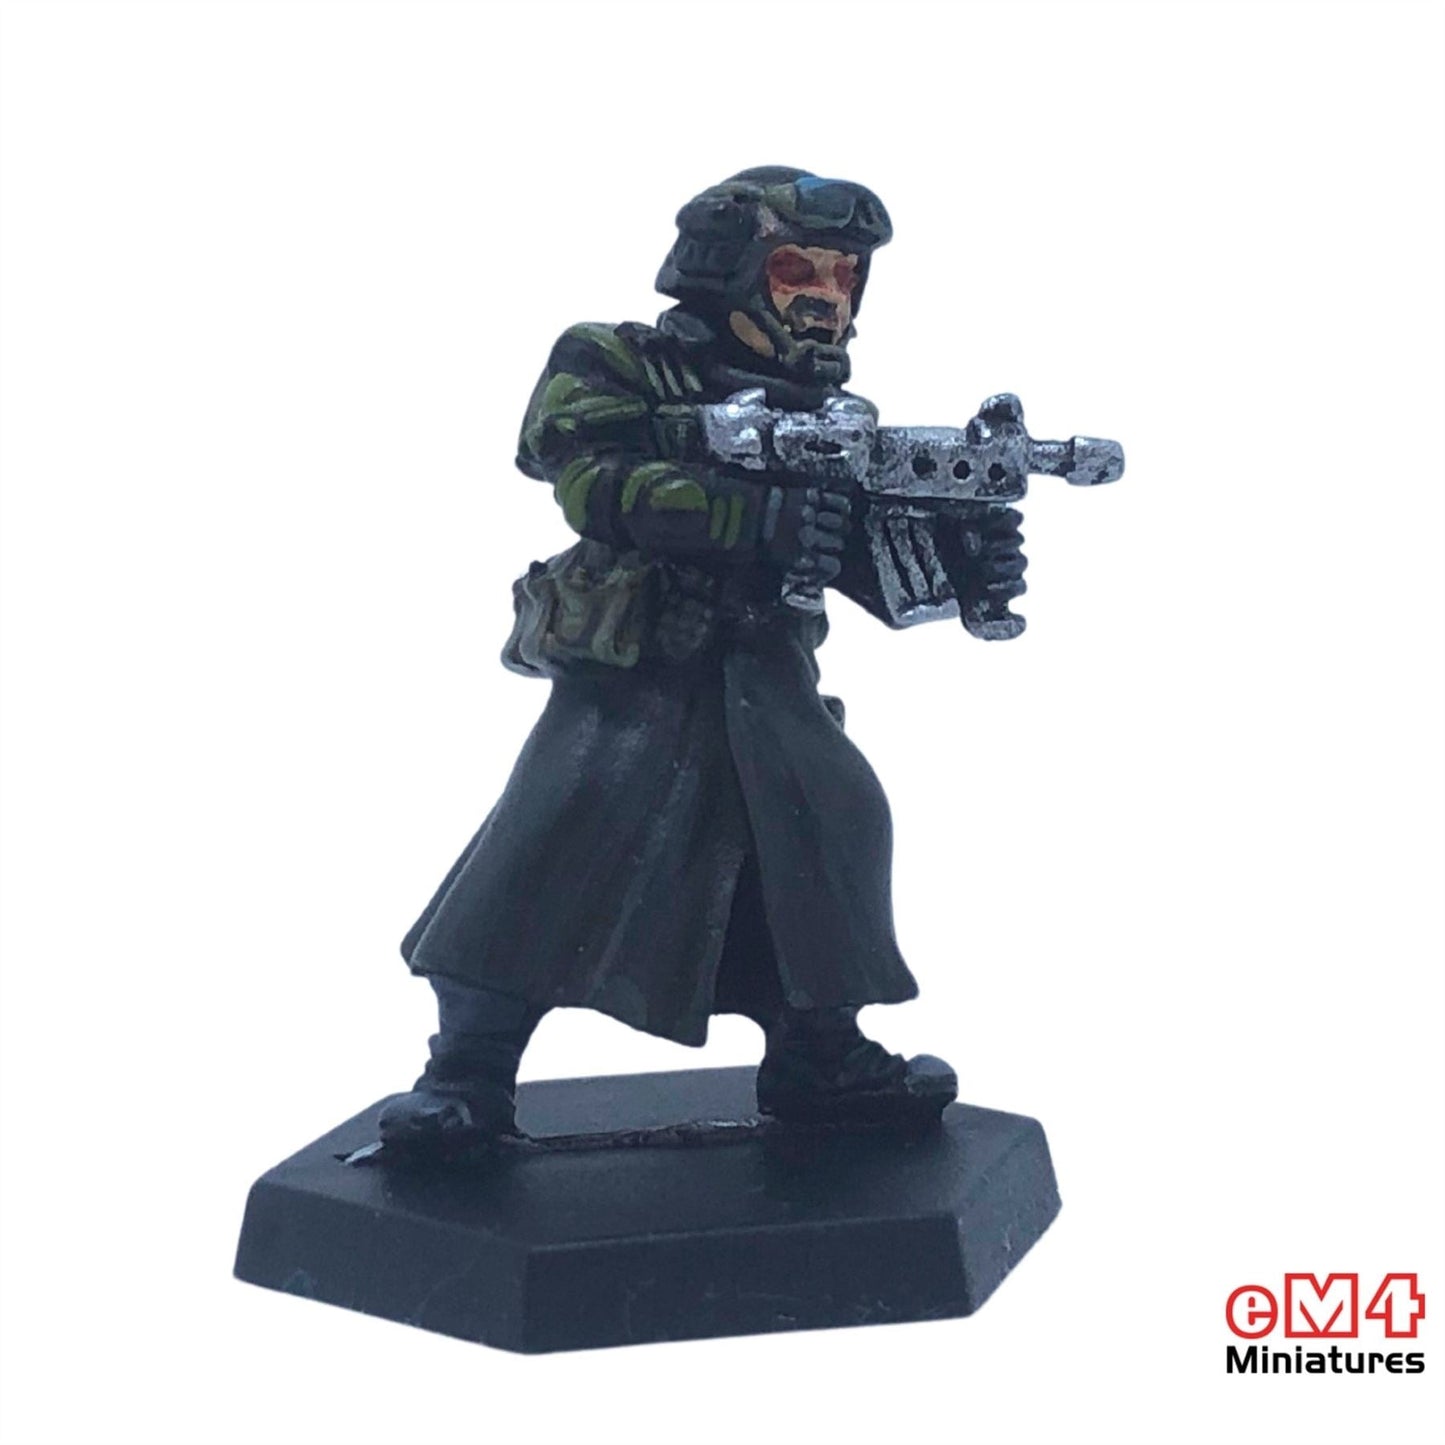 Mercenary with Sub Machine Gun Miniature